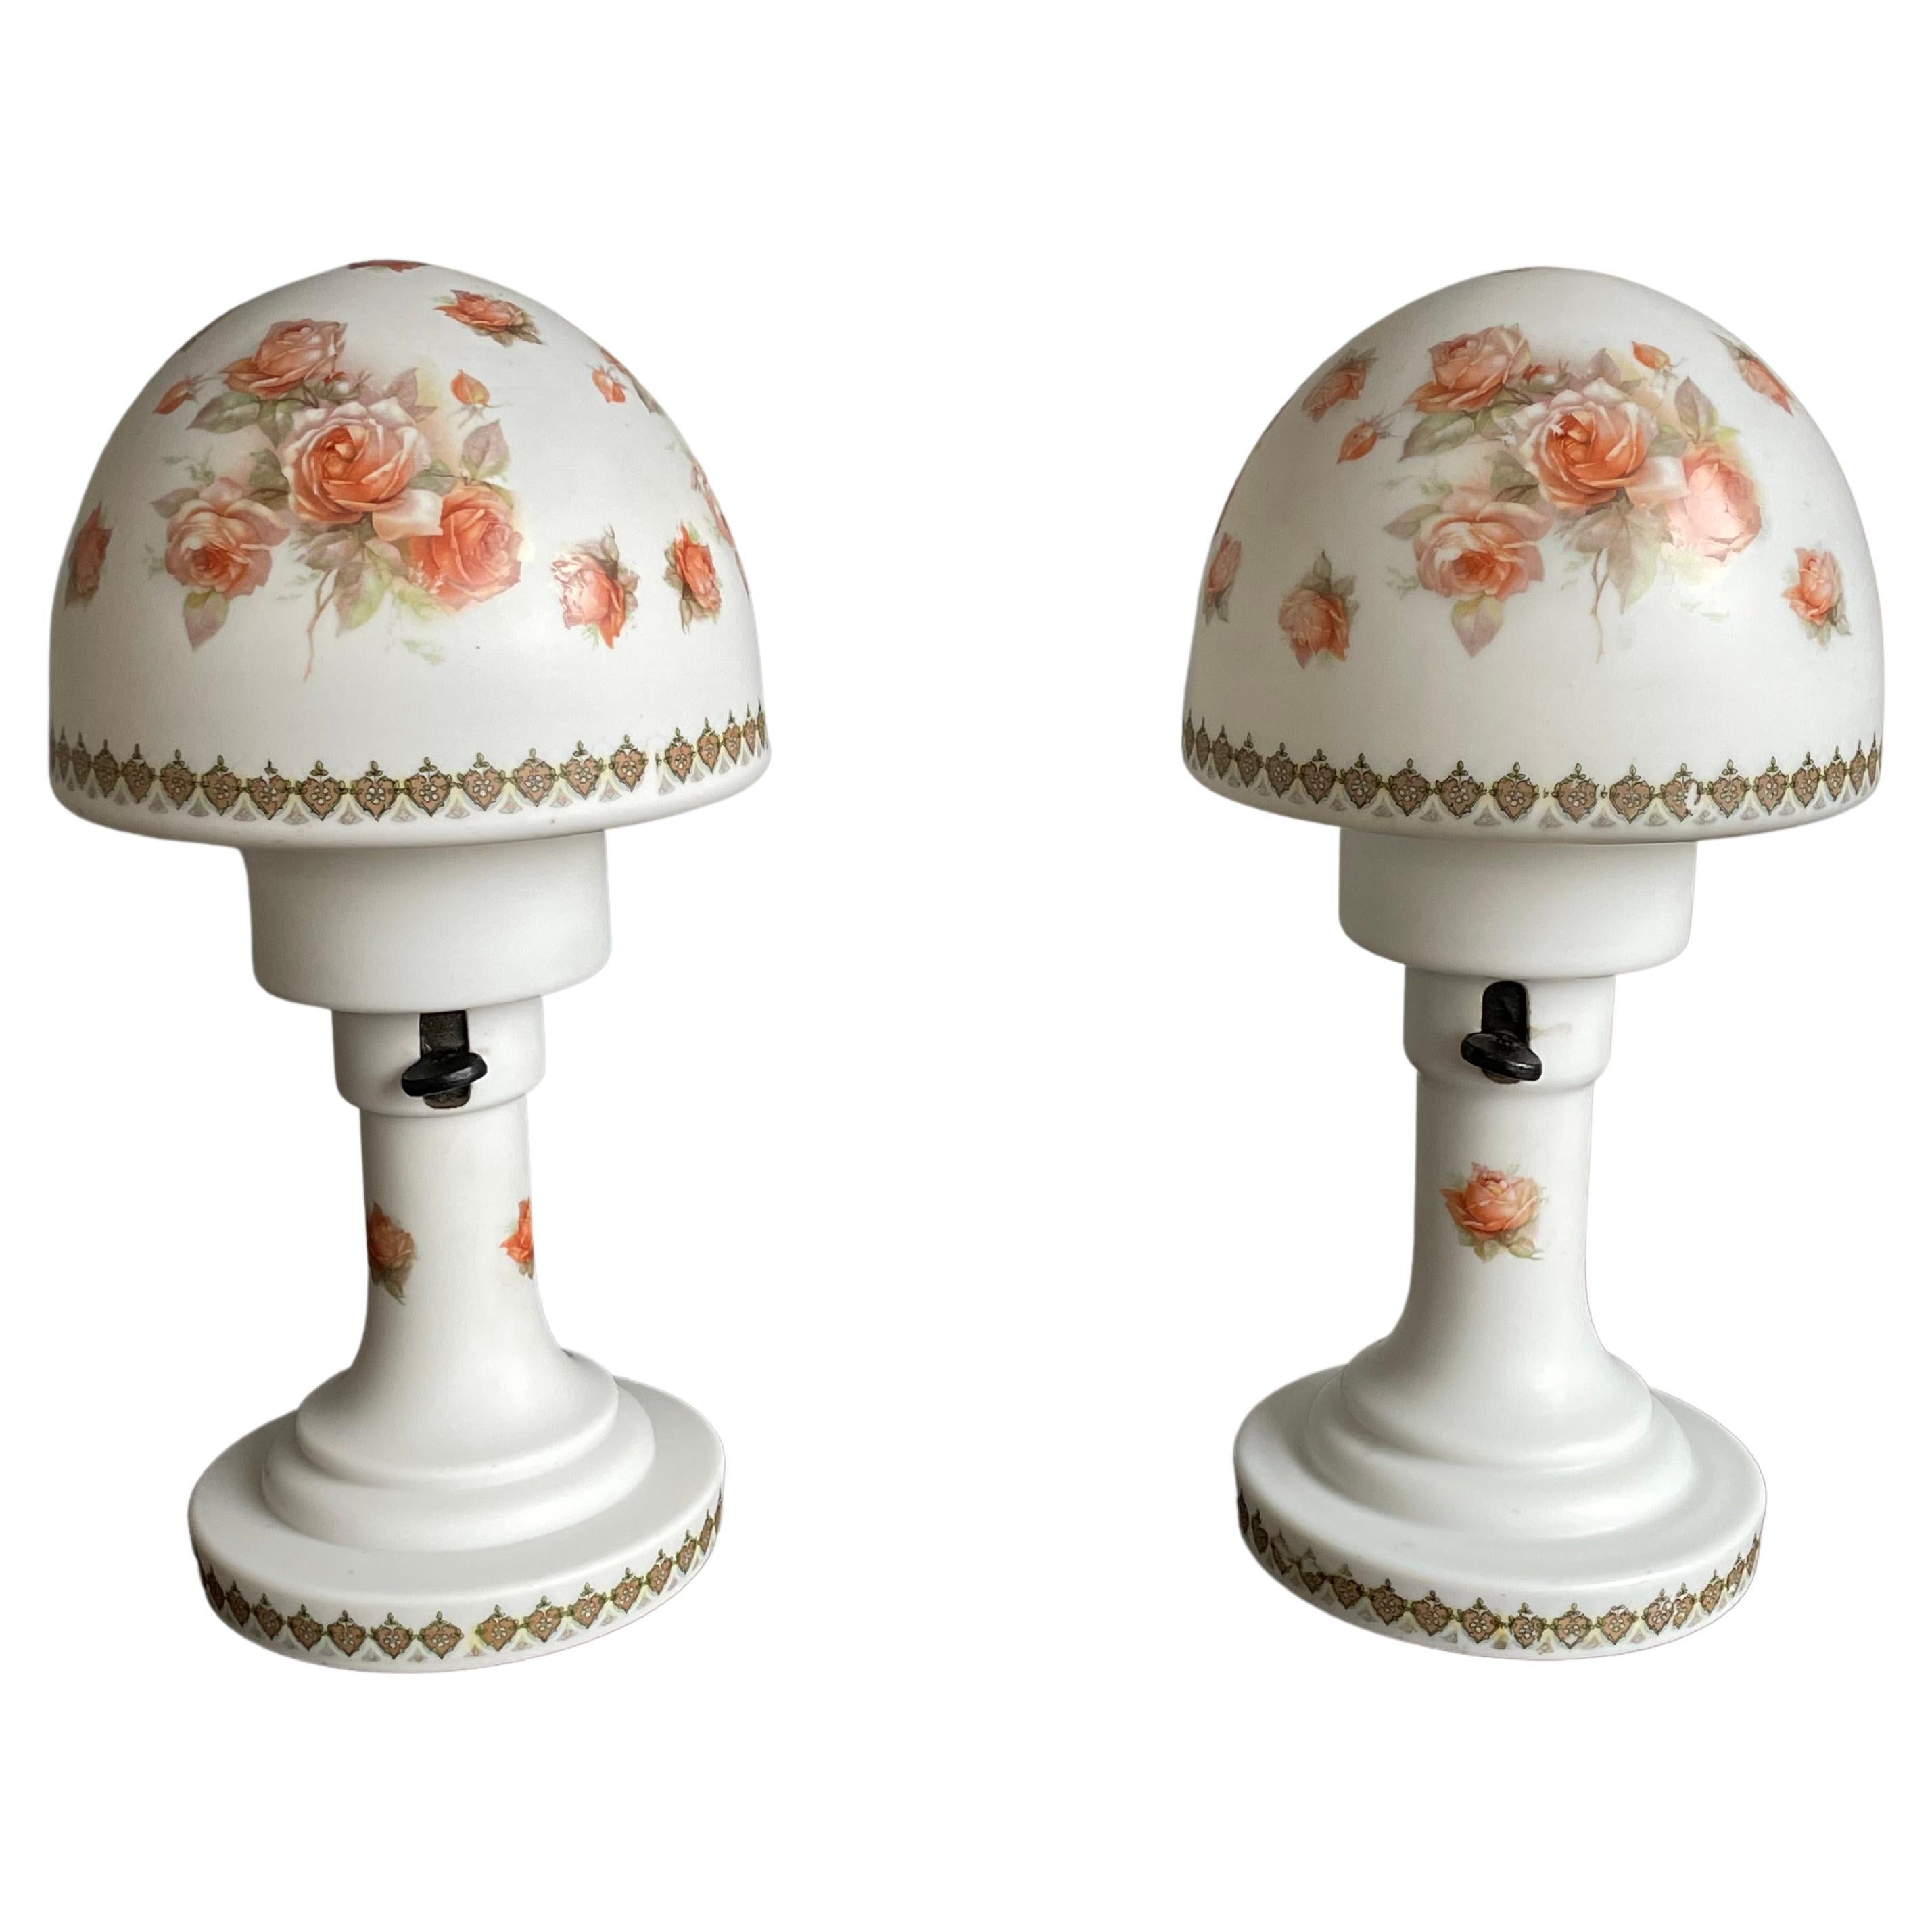 Seltenes Paar antiker Tischlampen aus Glas und Biskuit, dekoriert mit sehr hübschen Rosen